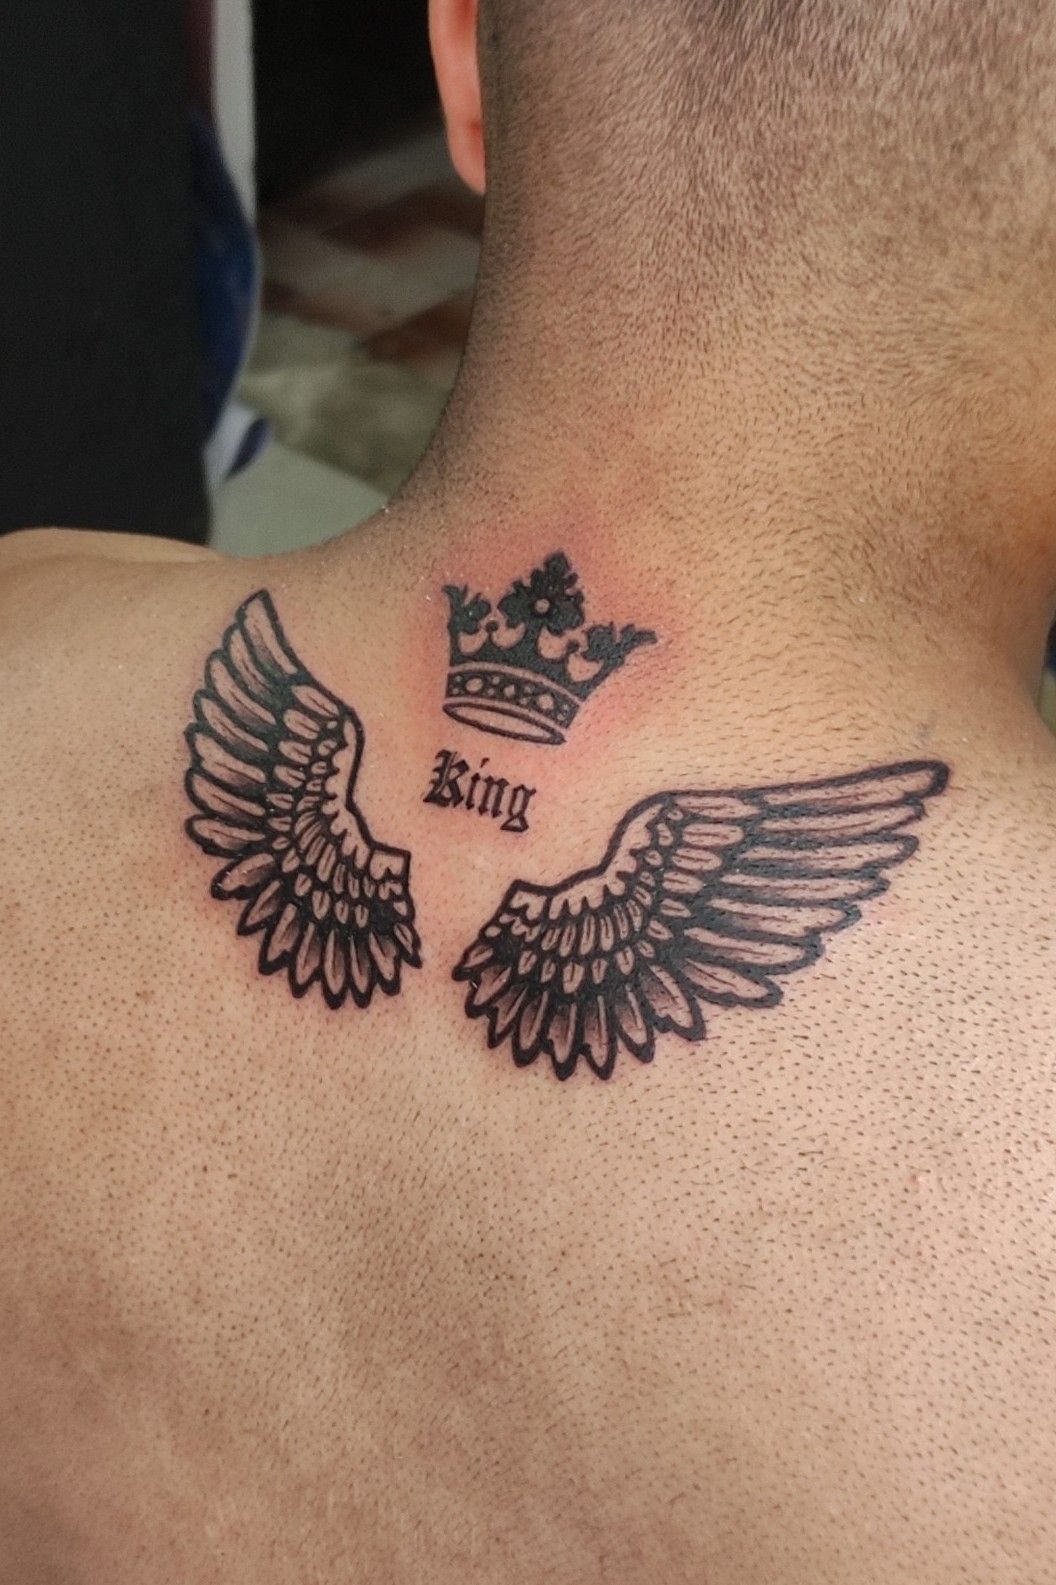 Mis ink   KING king wings crown neverchange tattoo kingdom hand  angel  Facebook